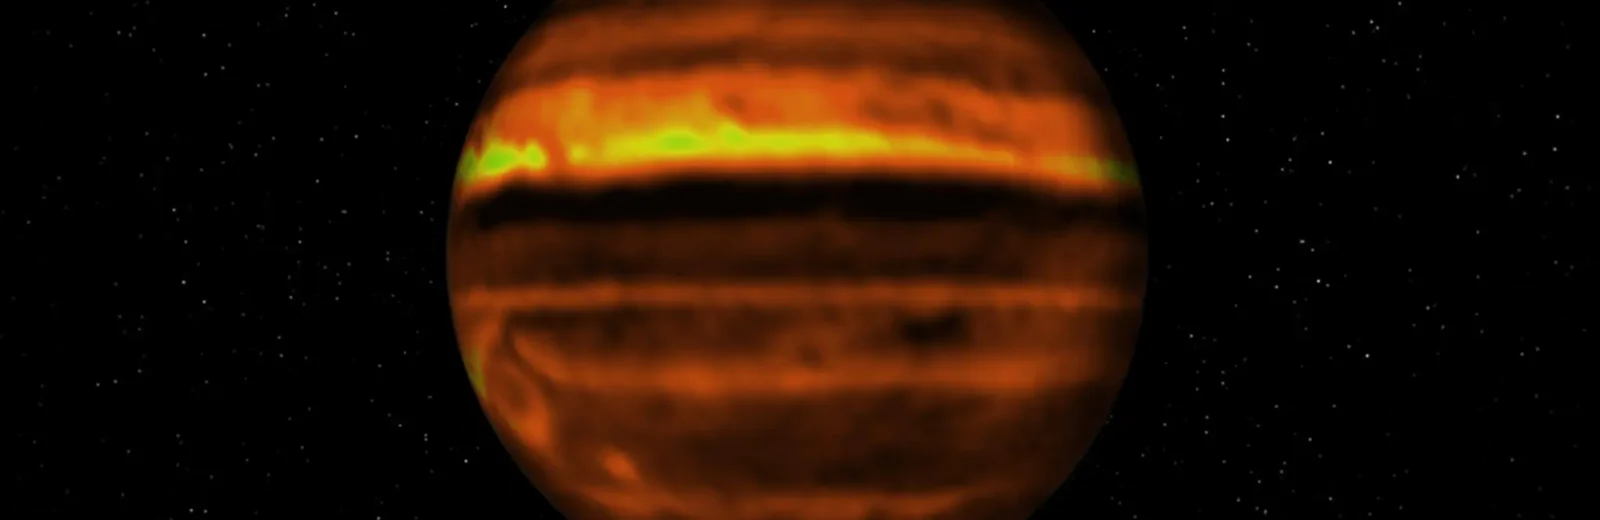 ¿Qué hay debajo de las nubes de Júpiter?